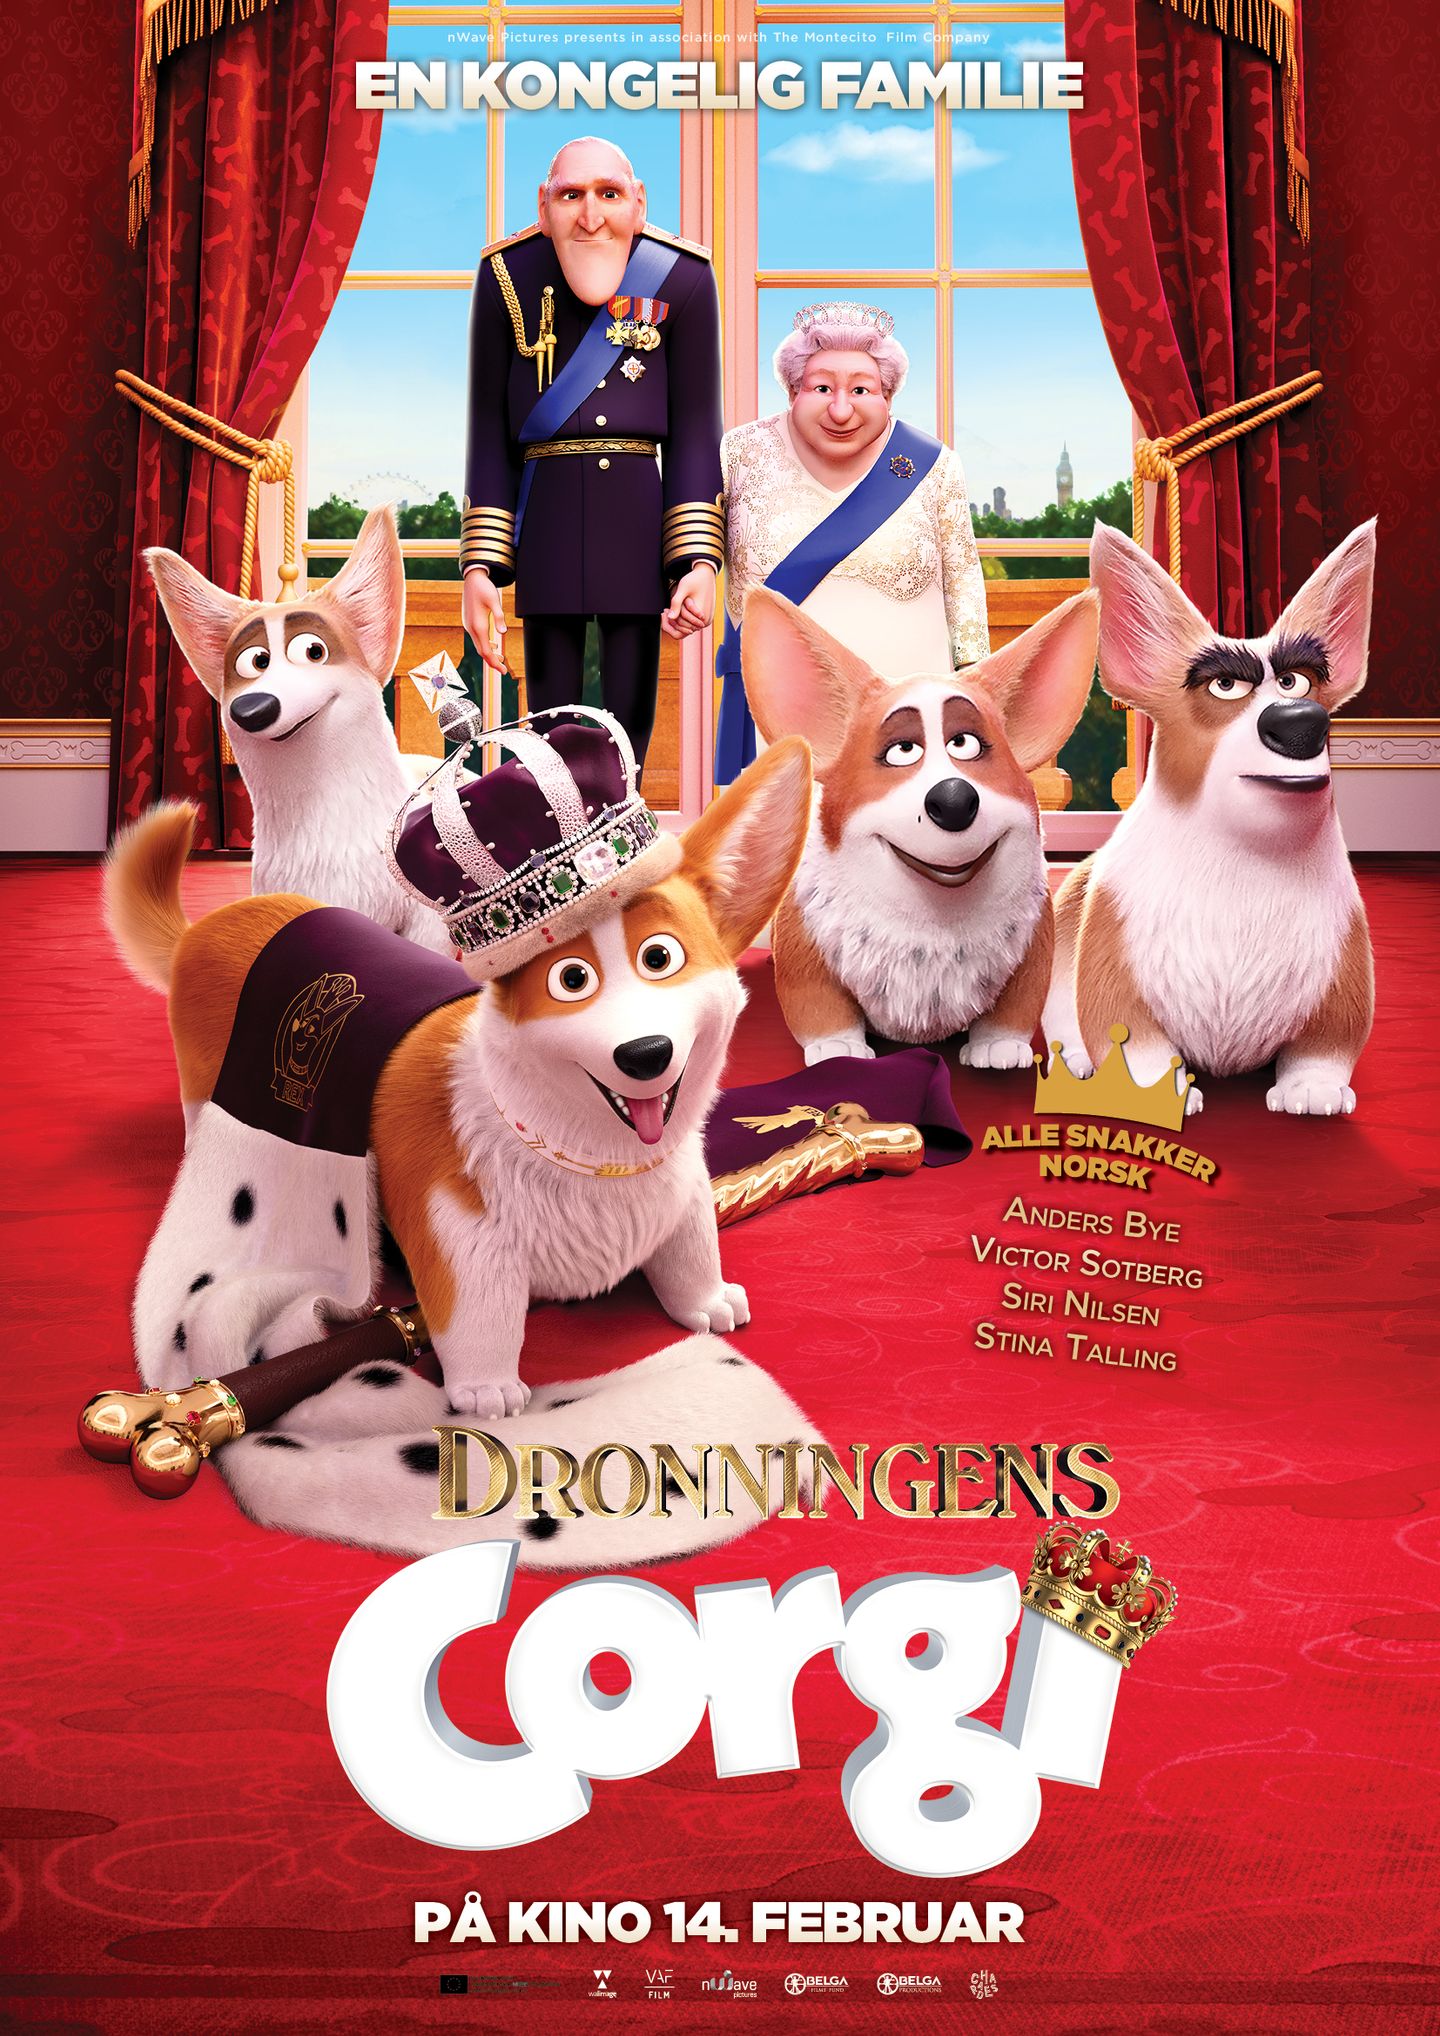 Plakat for 'Dronningens corgi'